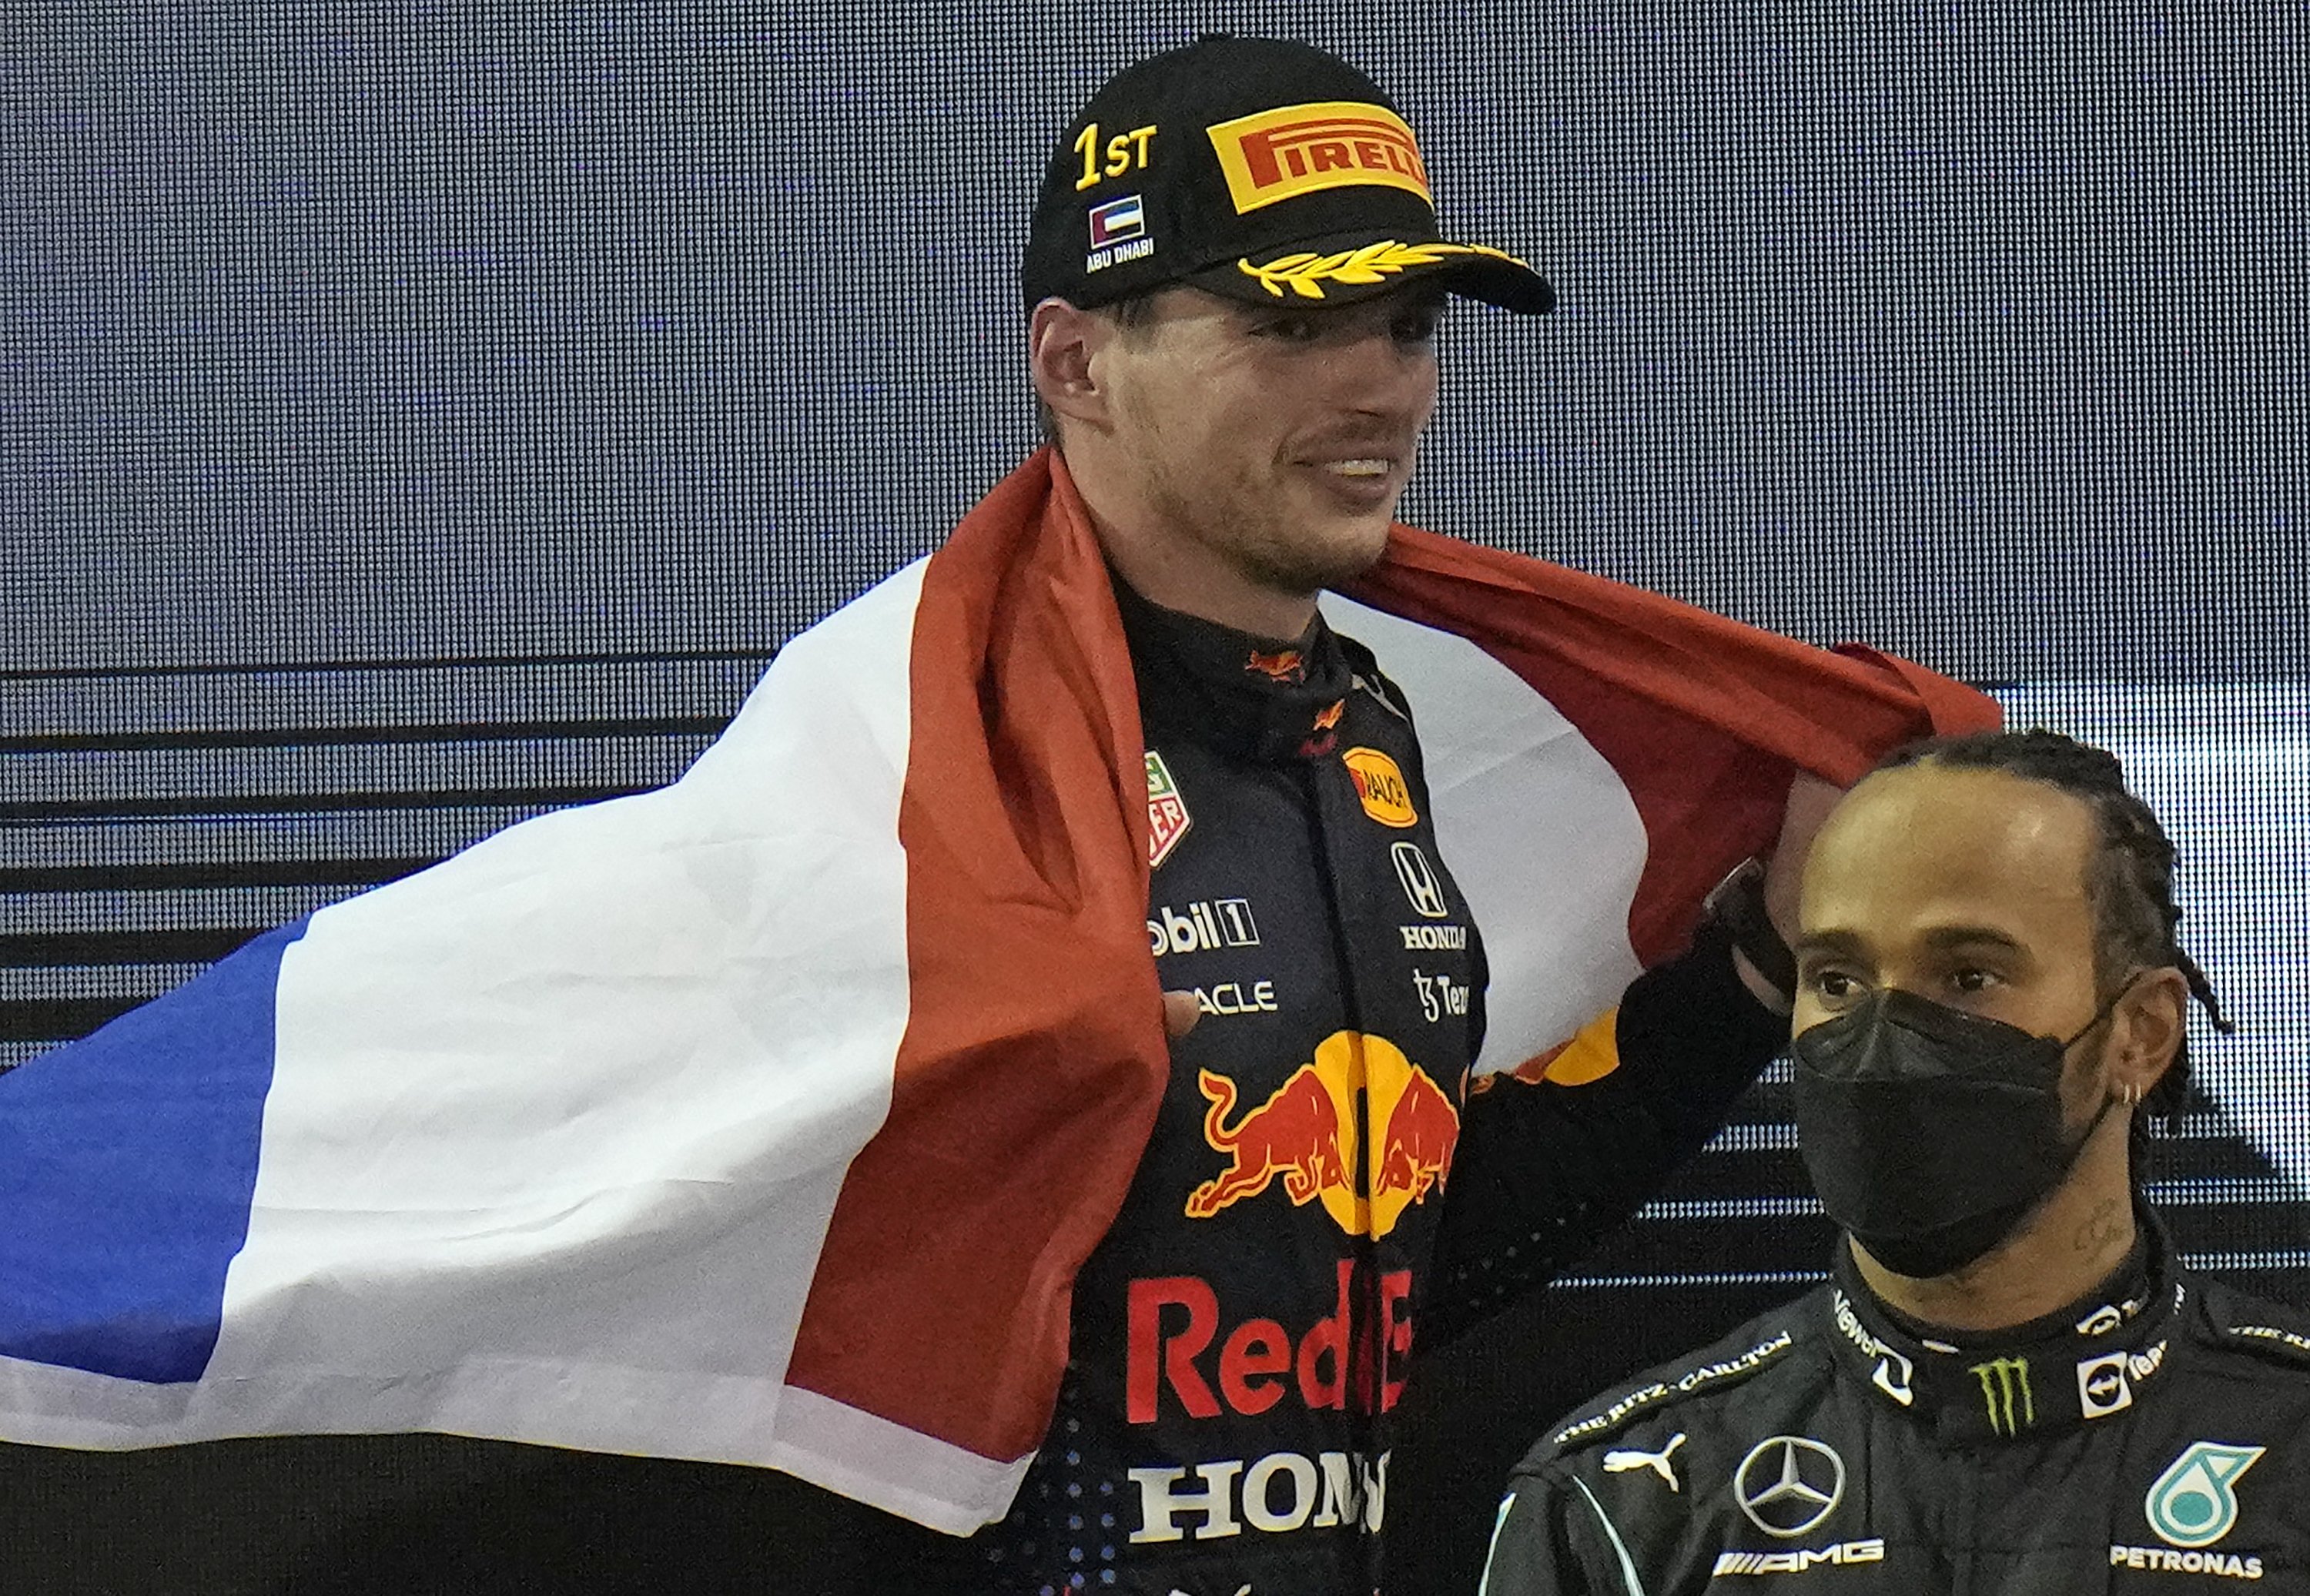 Pembalap Red Bull Max Verstappen (kiri) merayakan menjadi juara dunia setelah memenangkan F1 Grand Prix Abu Dhabi, Abu Dhabi, UEA, 12 Desember 2021. (AP Photo)